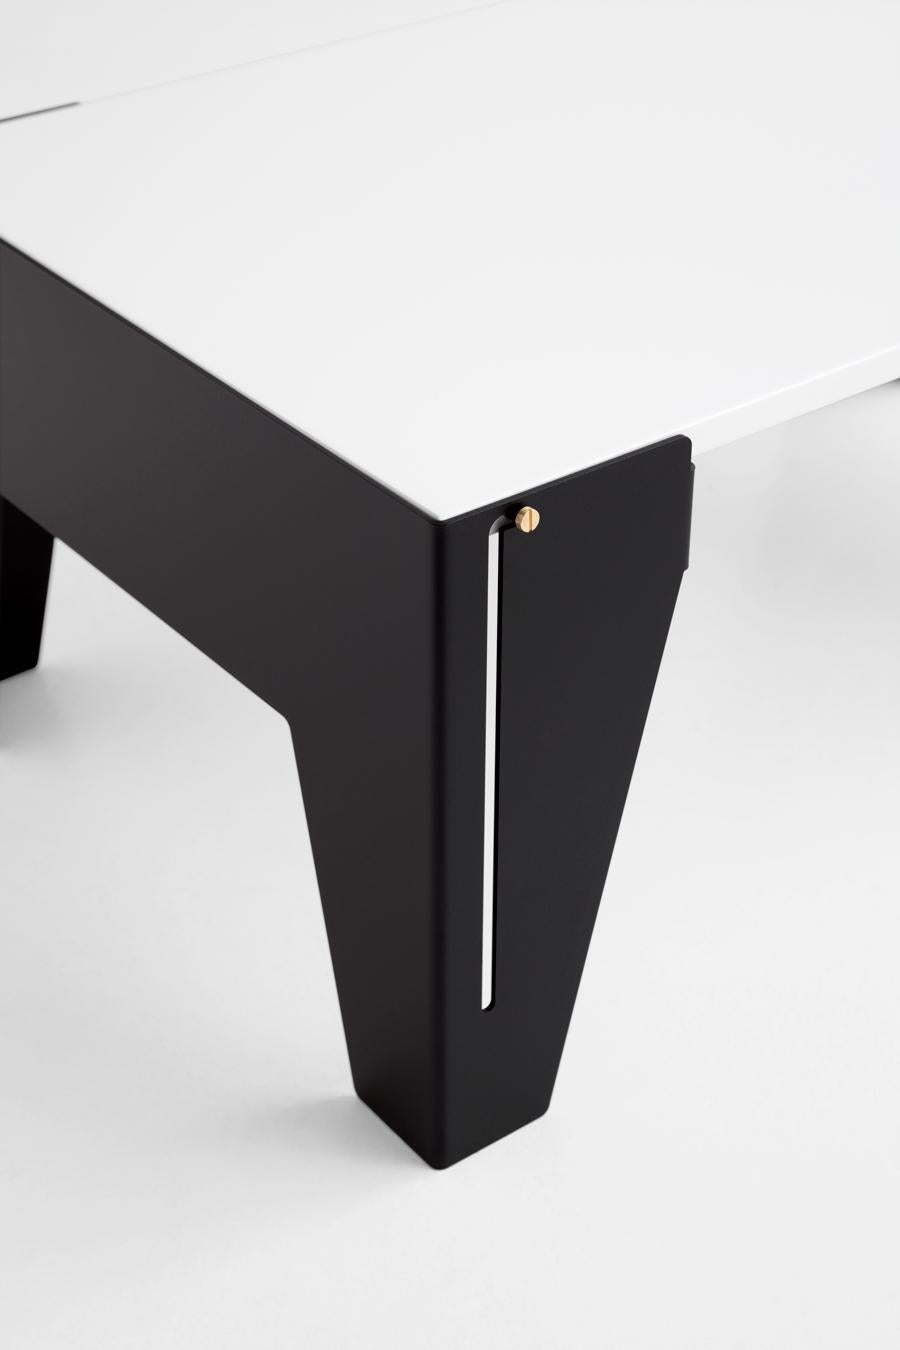 Adolfo Abejon Contemporary Design 'Falcon' Side Table 1